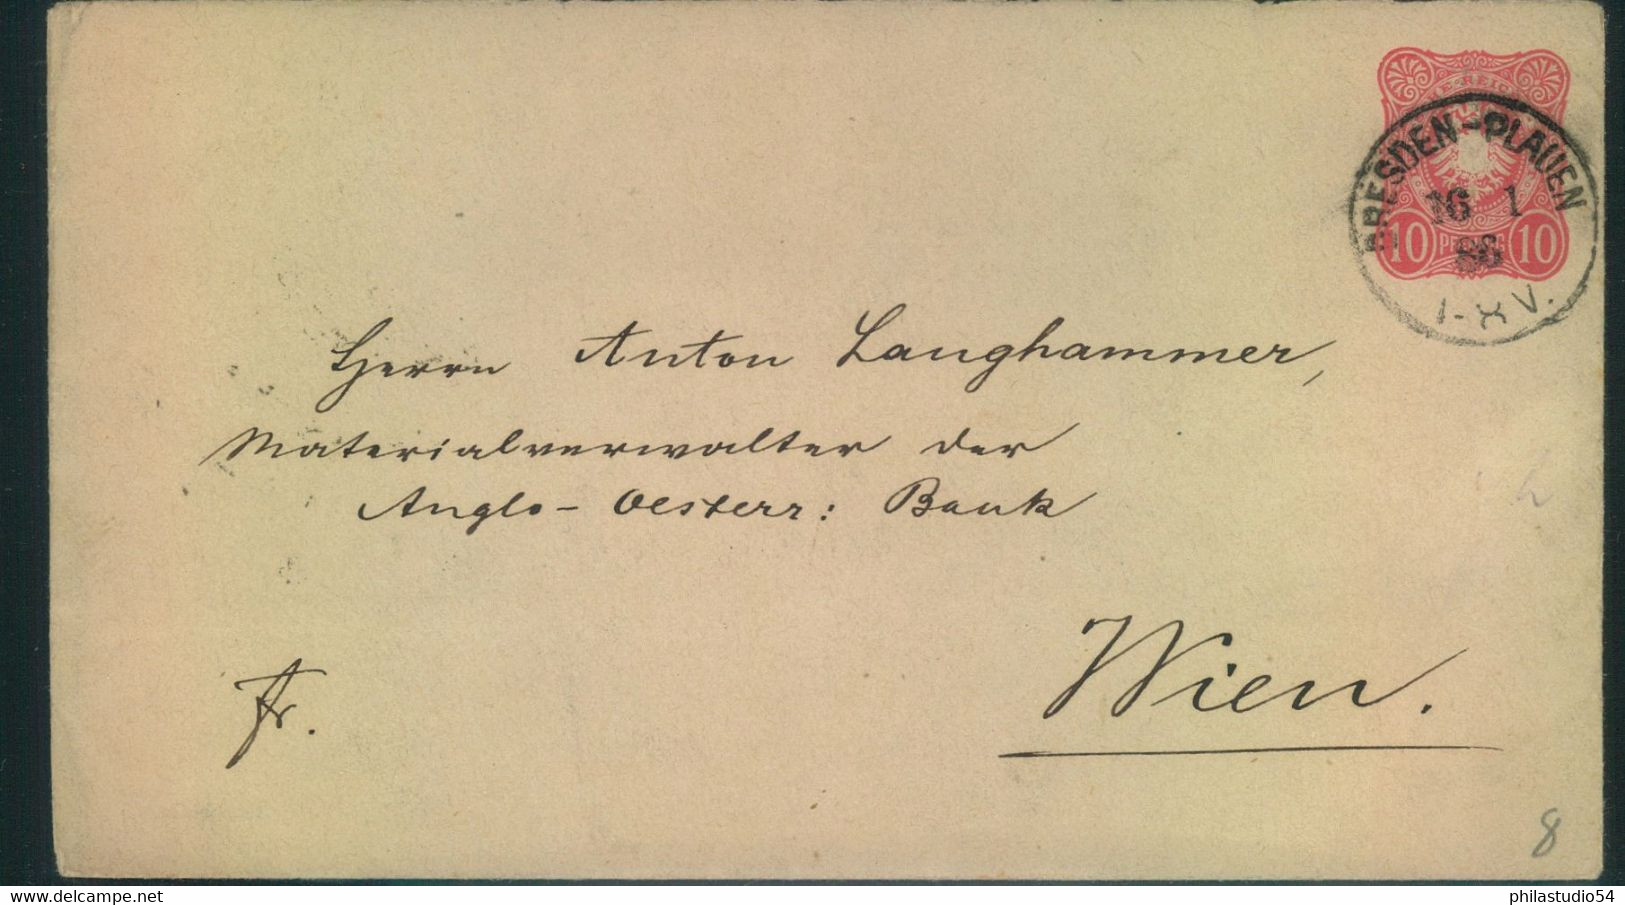 1886, Bahnpostoval "DRESDEN  PLAUEN" Auf GSU 10 Pfg. - Saxony